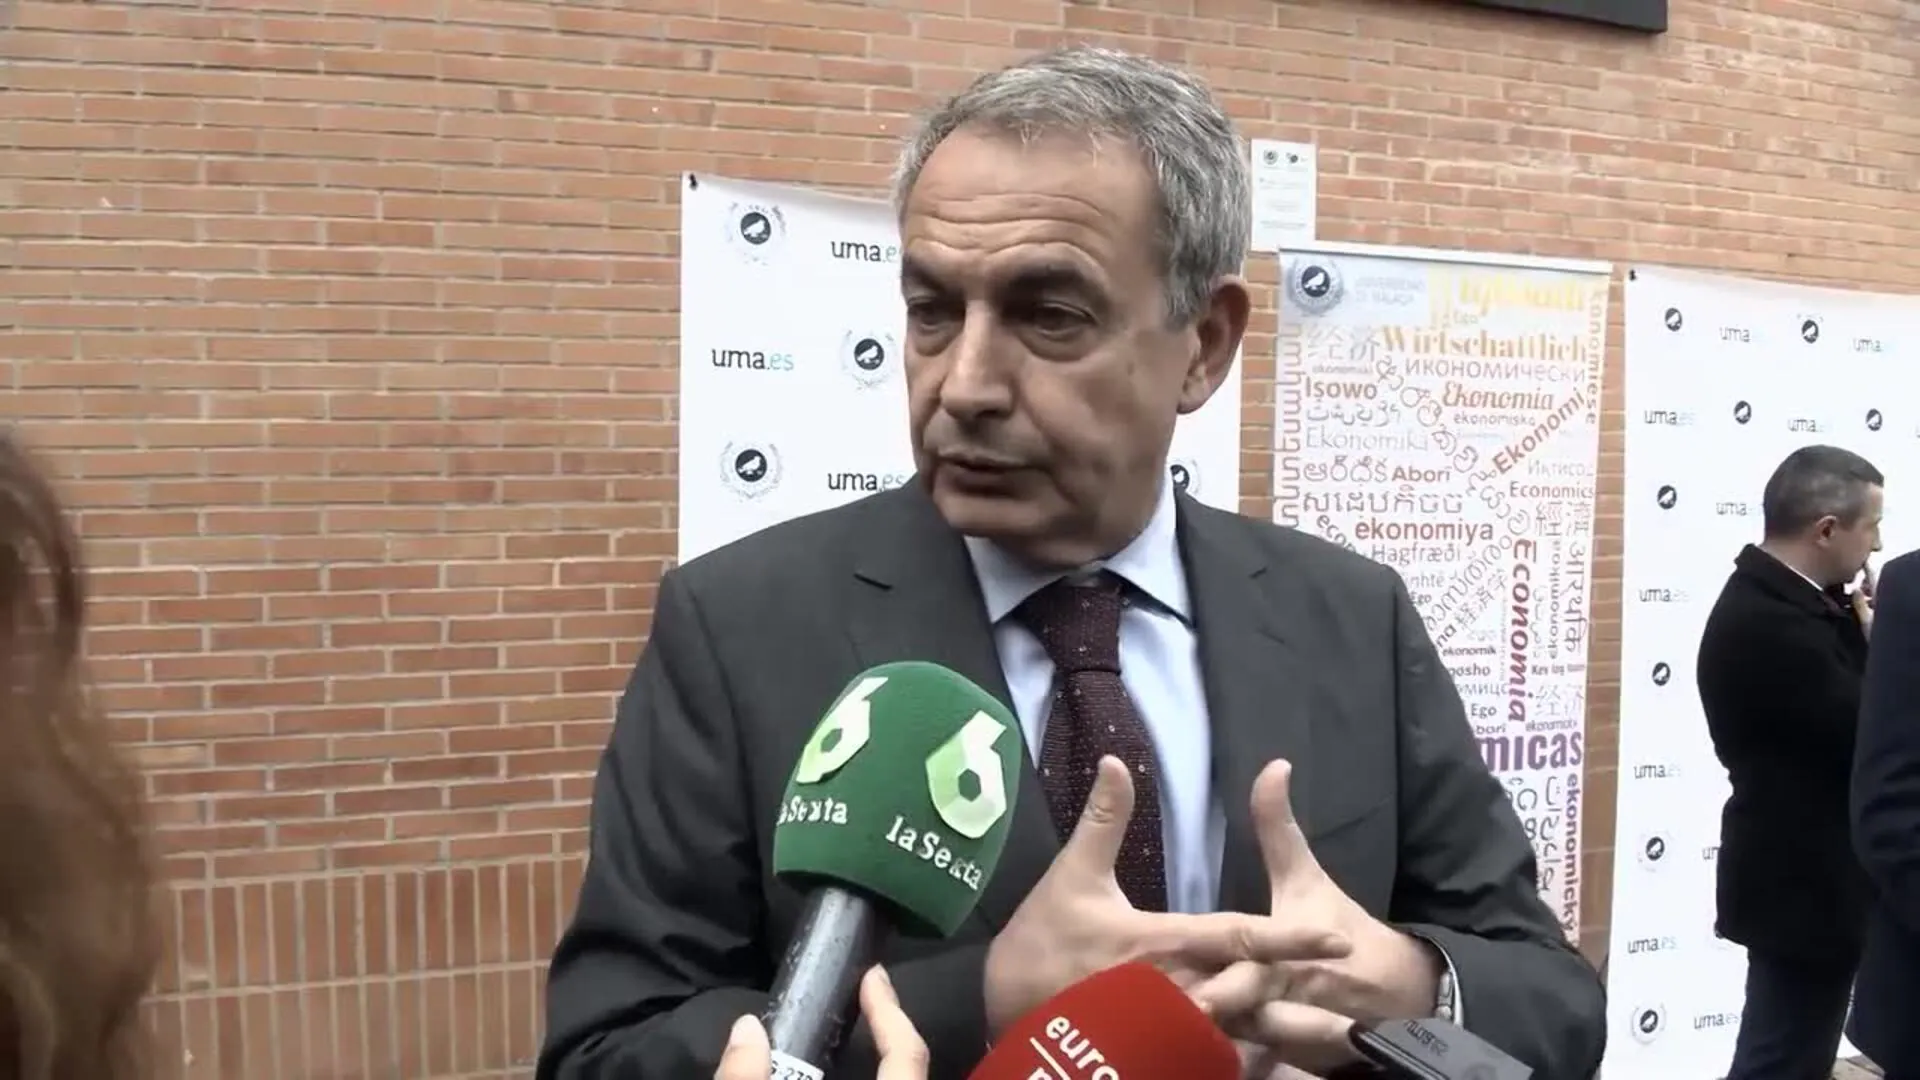 Zapatero pide "negociar y acordar" con Cataluña y no referendos que "no solucionan"